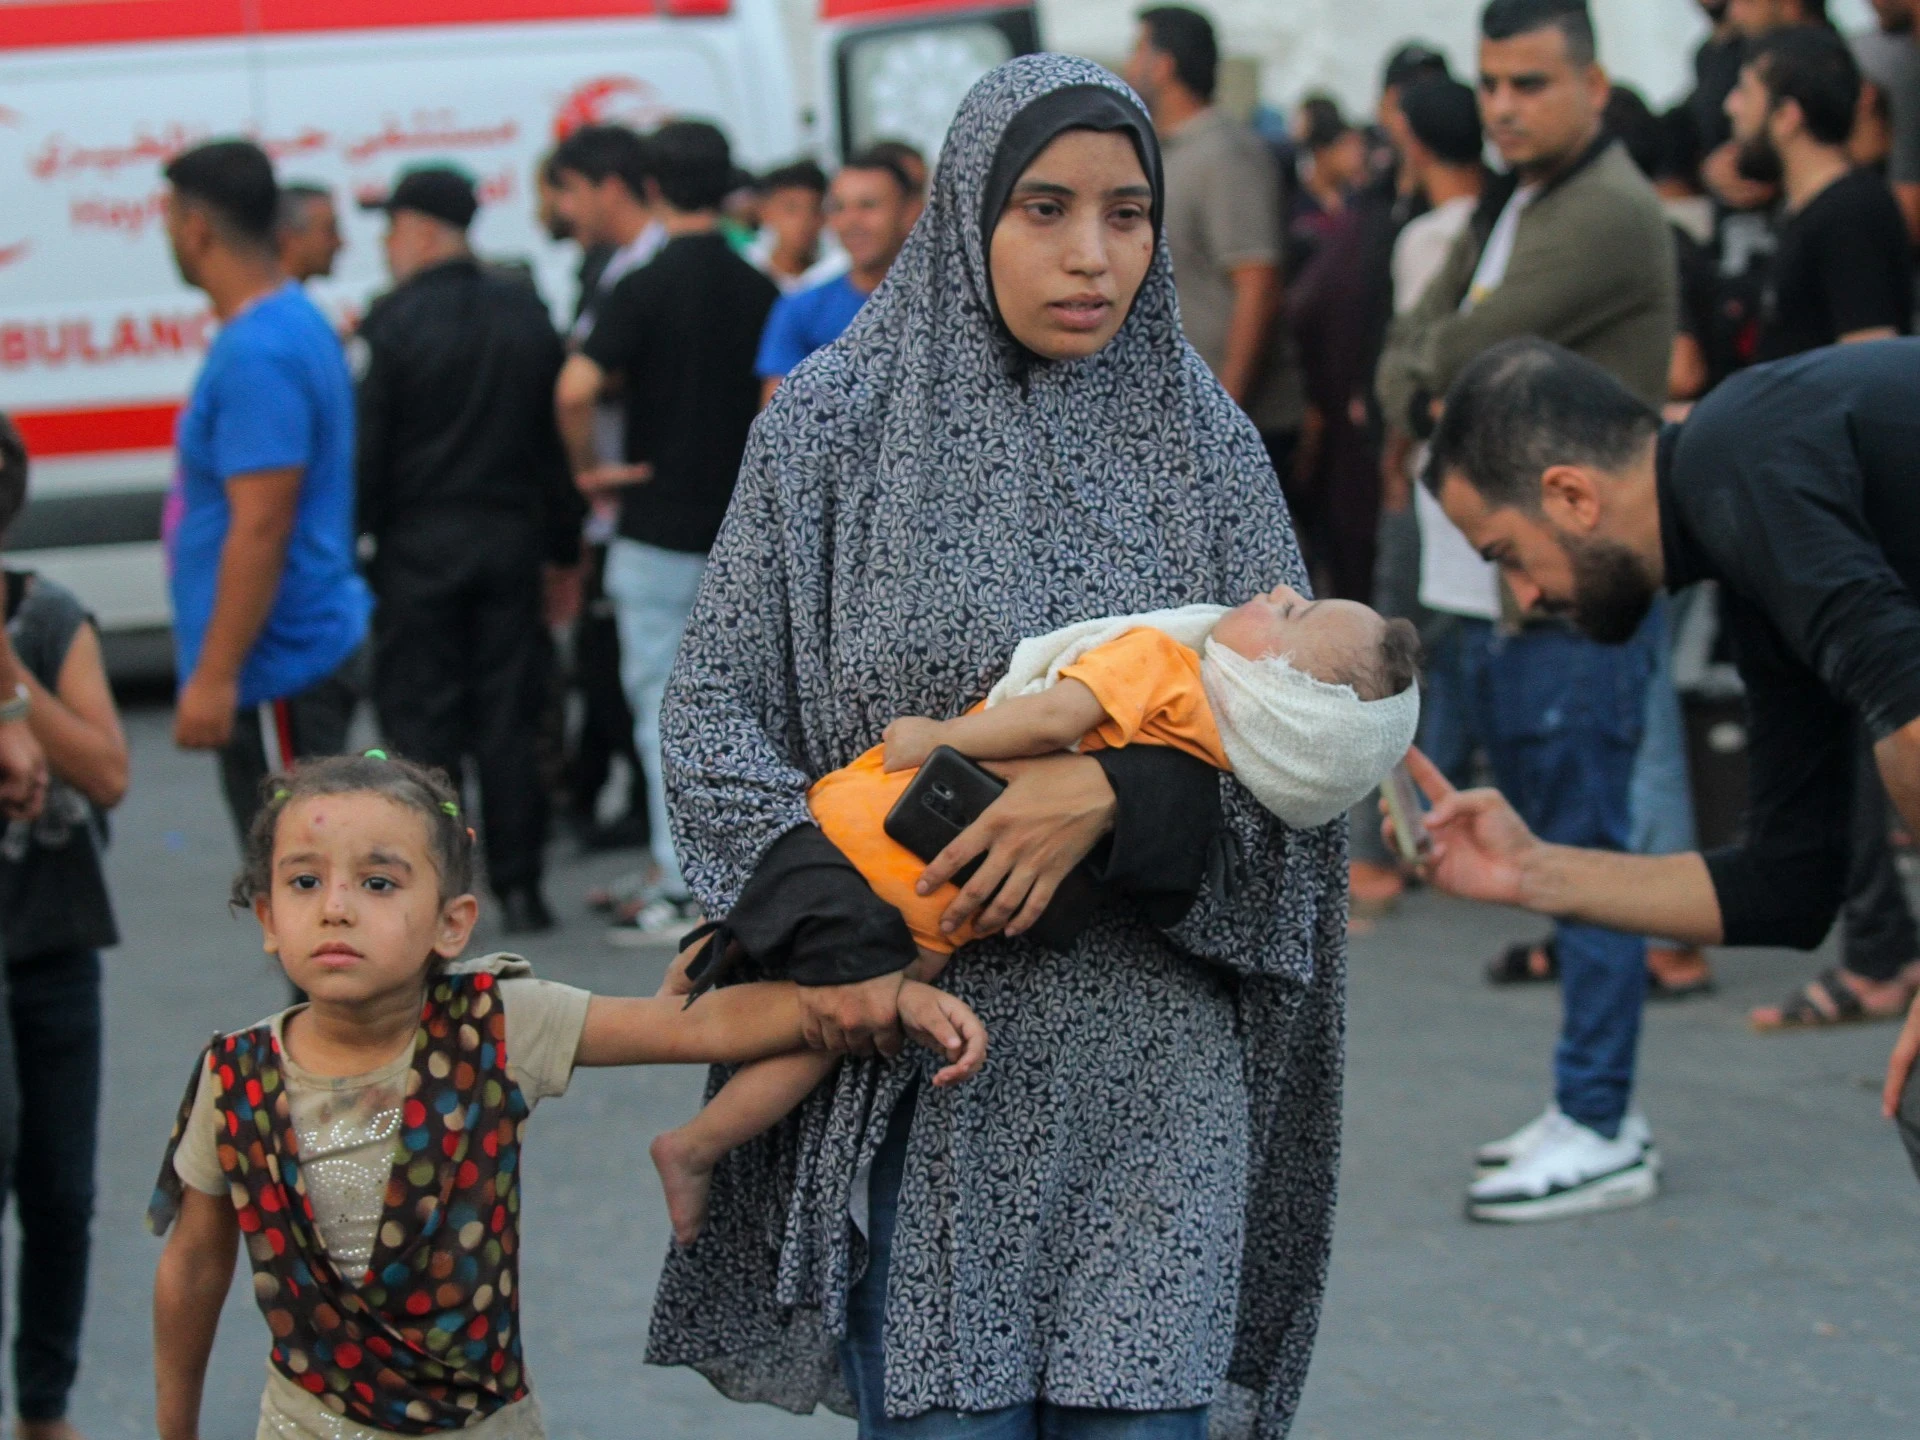 وزارة الصحة في غزة تطلق نداء الإنقاذ وتطلب دعمًا دوليًا أمام تصعيد الاحتلال الإسرائيلي في مجمع ناصر الطبي